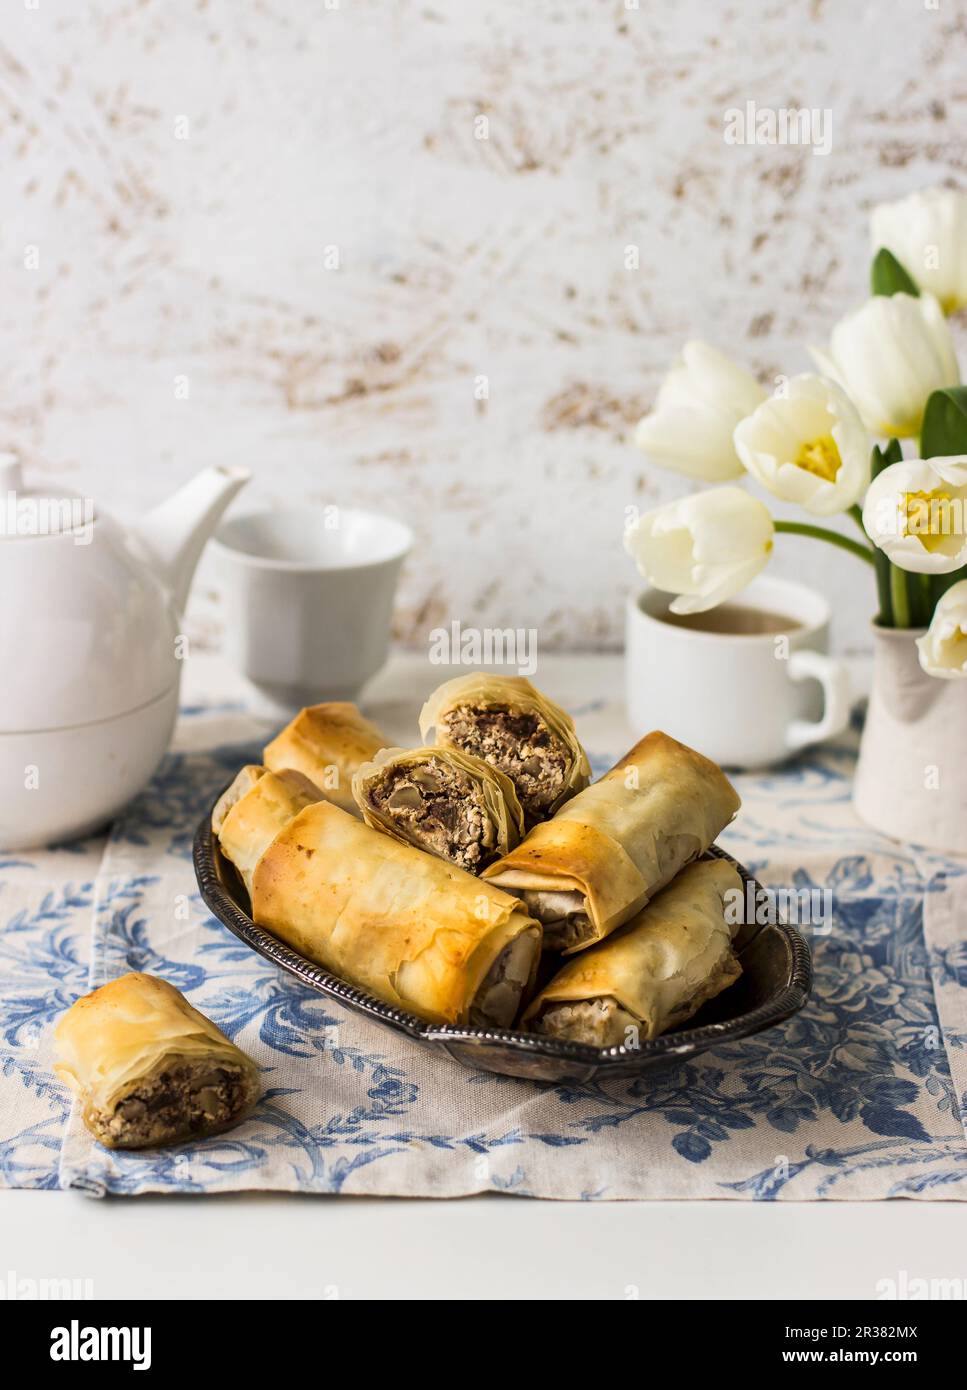 Filo Brötchen mit Manouri-Käse, Walnüssen, Rosinen und Minze; Tee, Weiße Tulpen Stockfoto